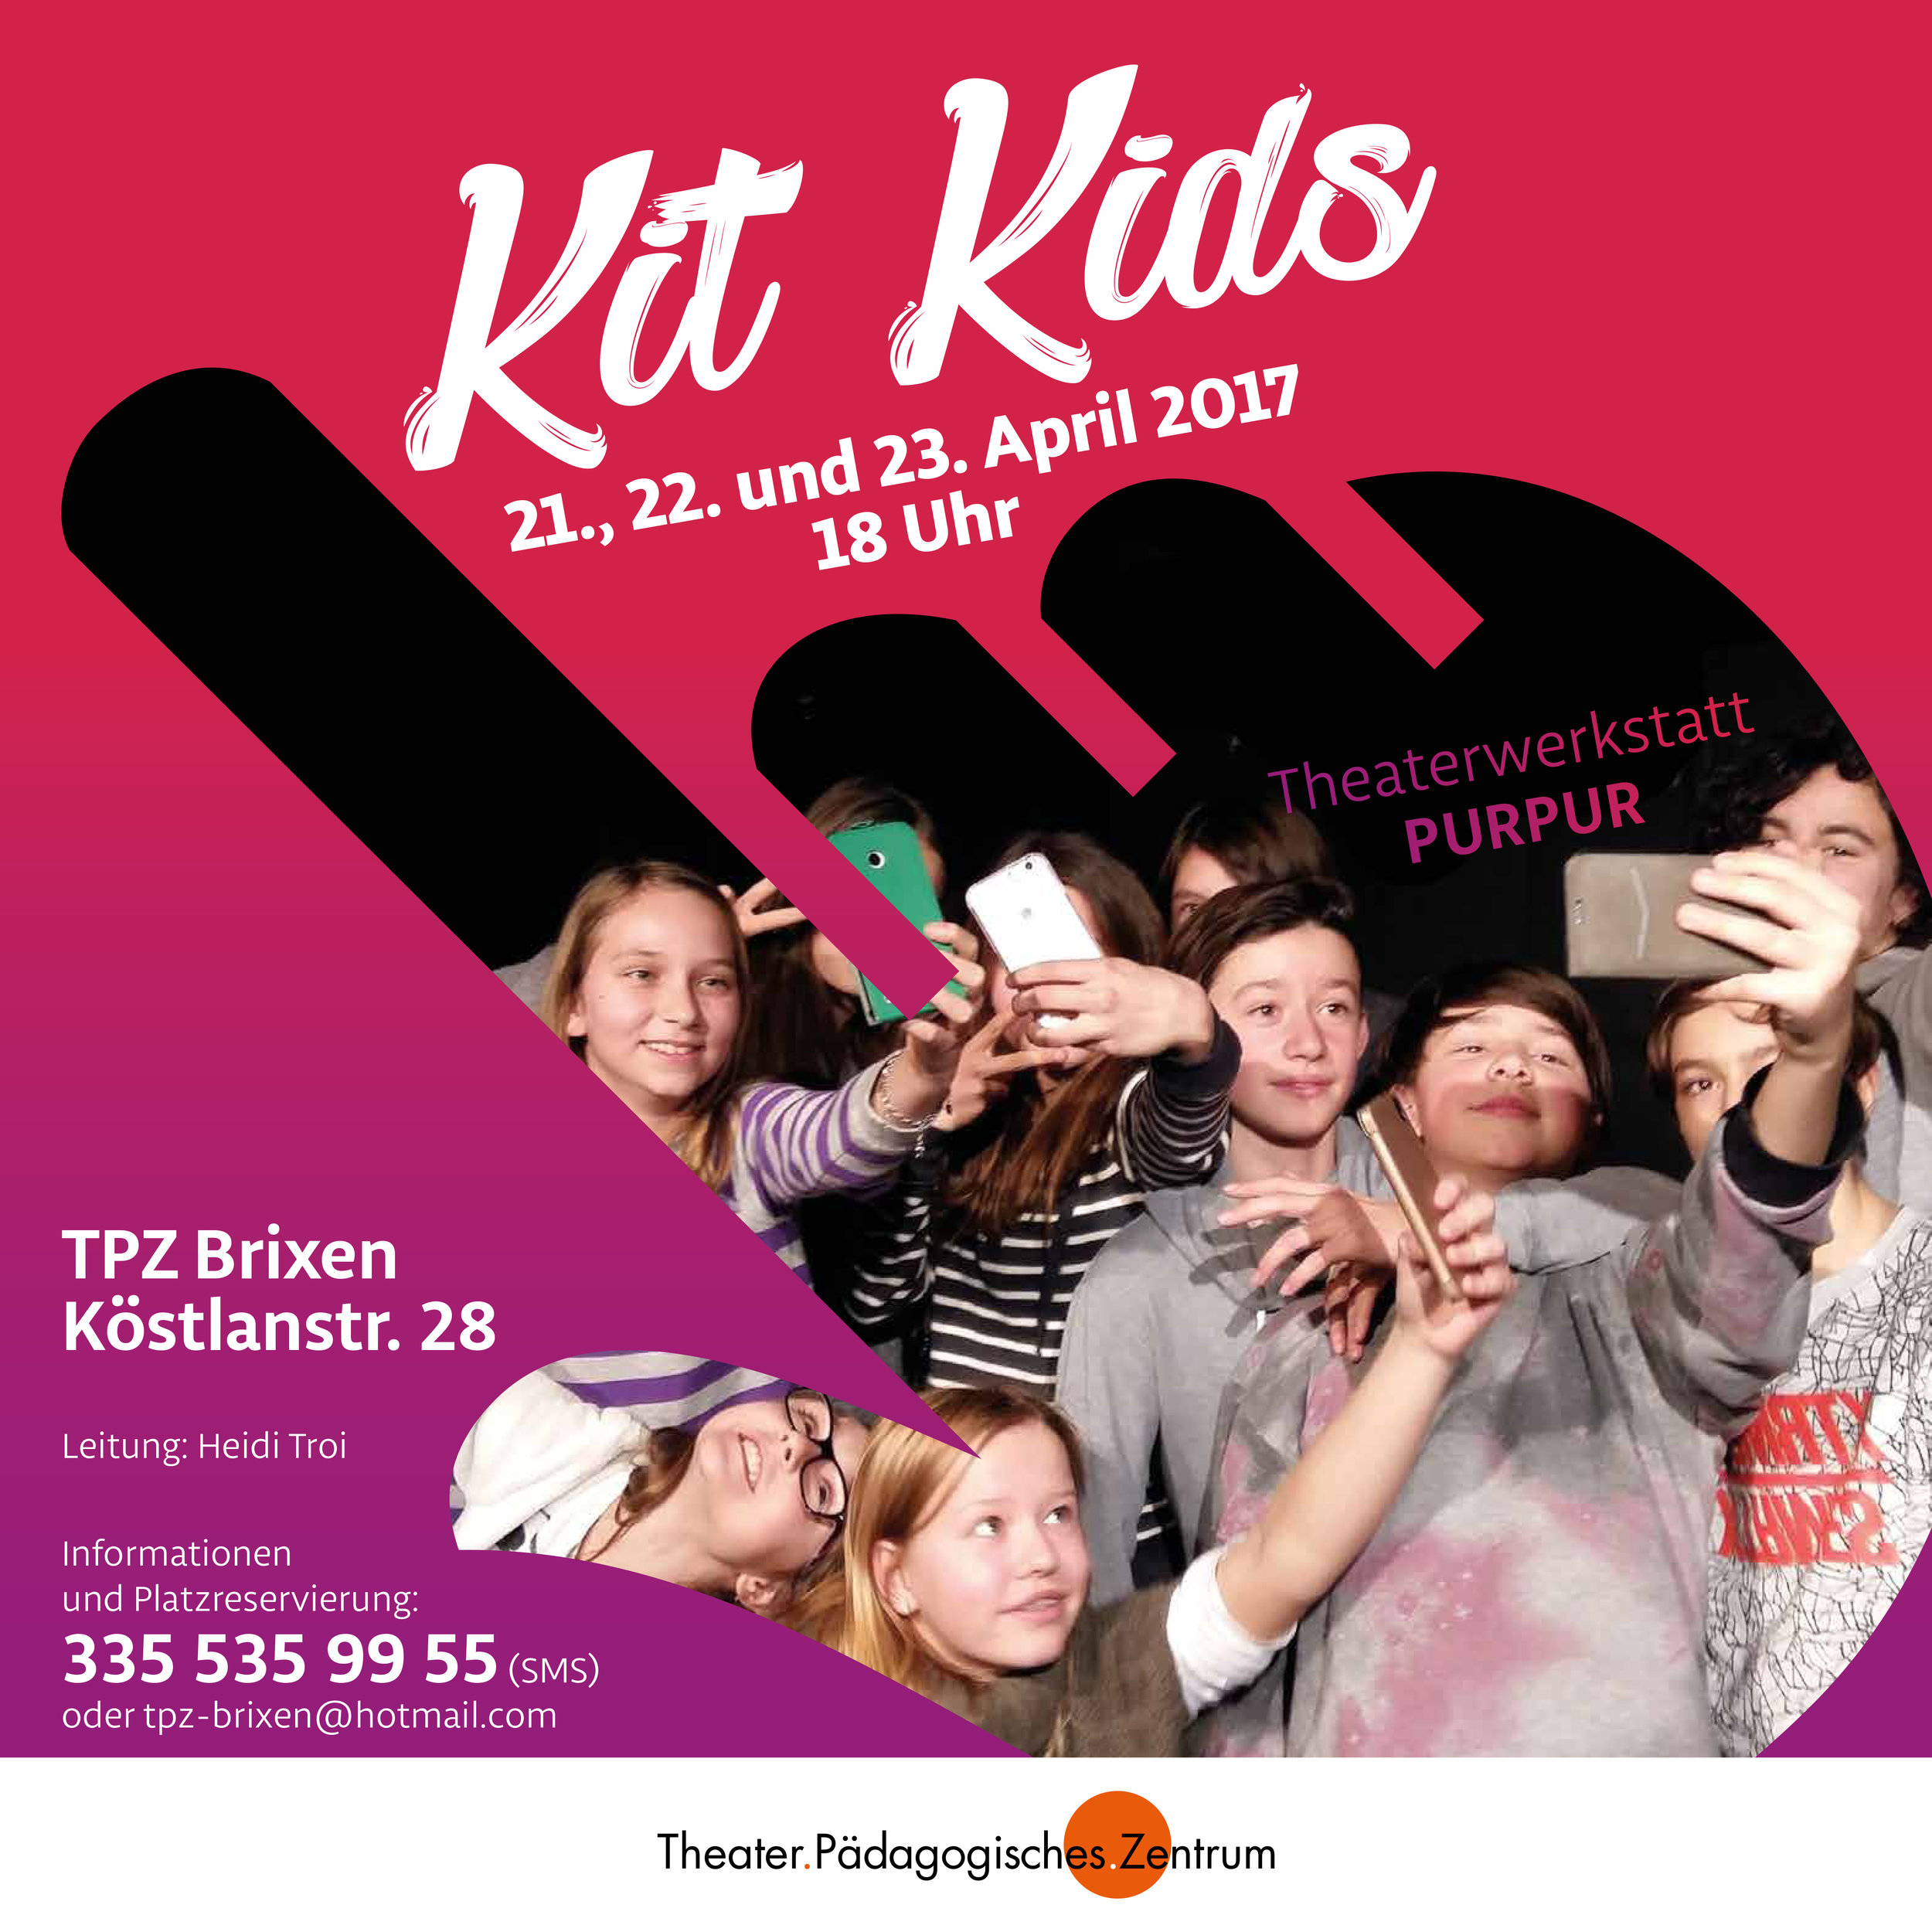 2017 purpur KIT Kids Plakat.jpg